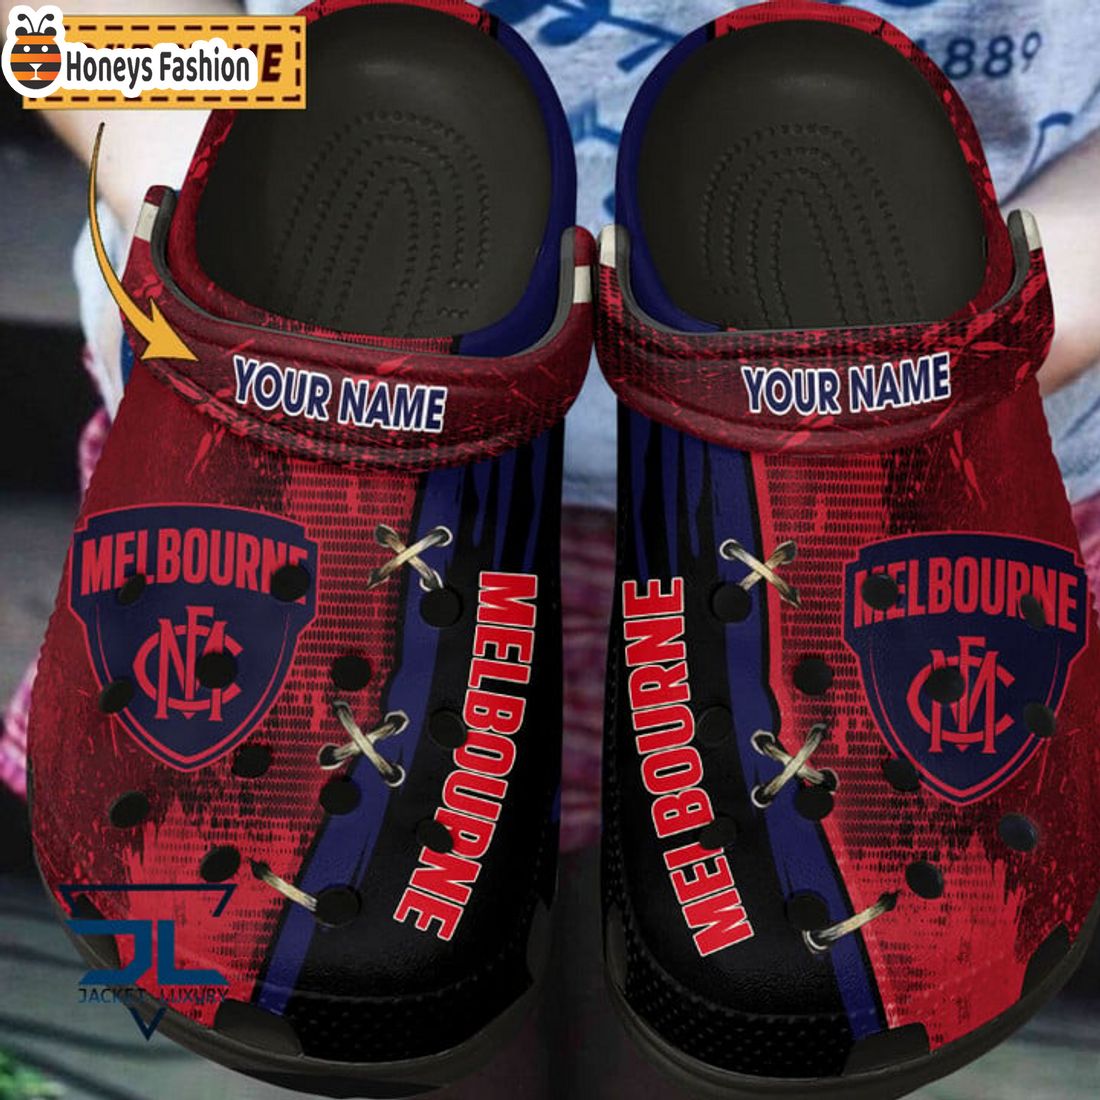 HOT Melbourne Football Club Custom Name Crocs Clog Shoes